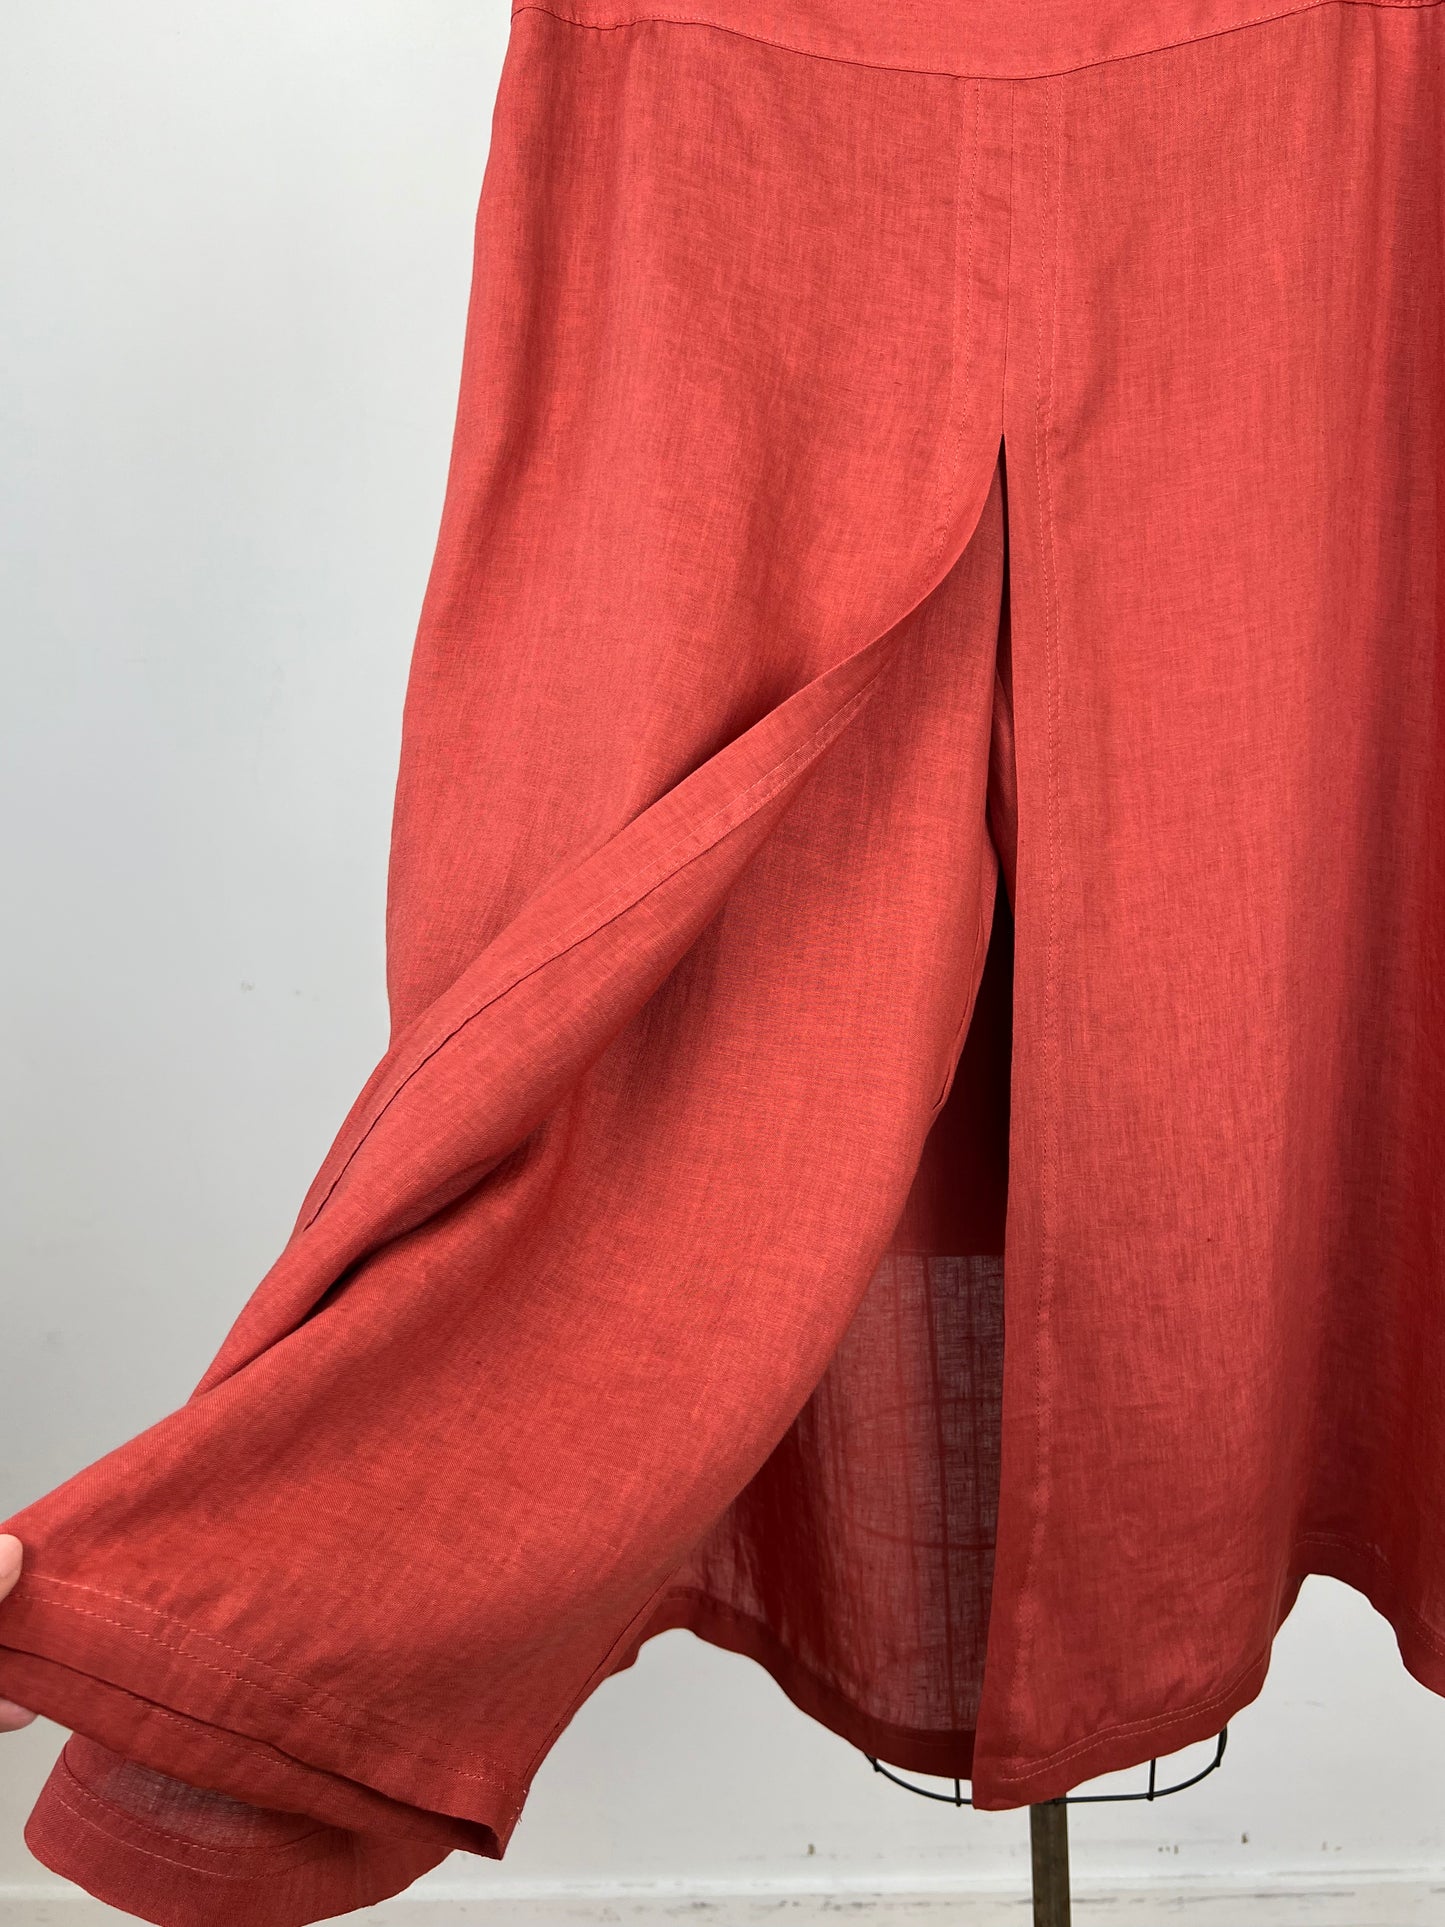 Pantalon en lin terra cotta à jupe fendue (XS et XL)